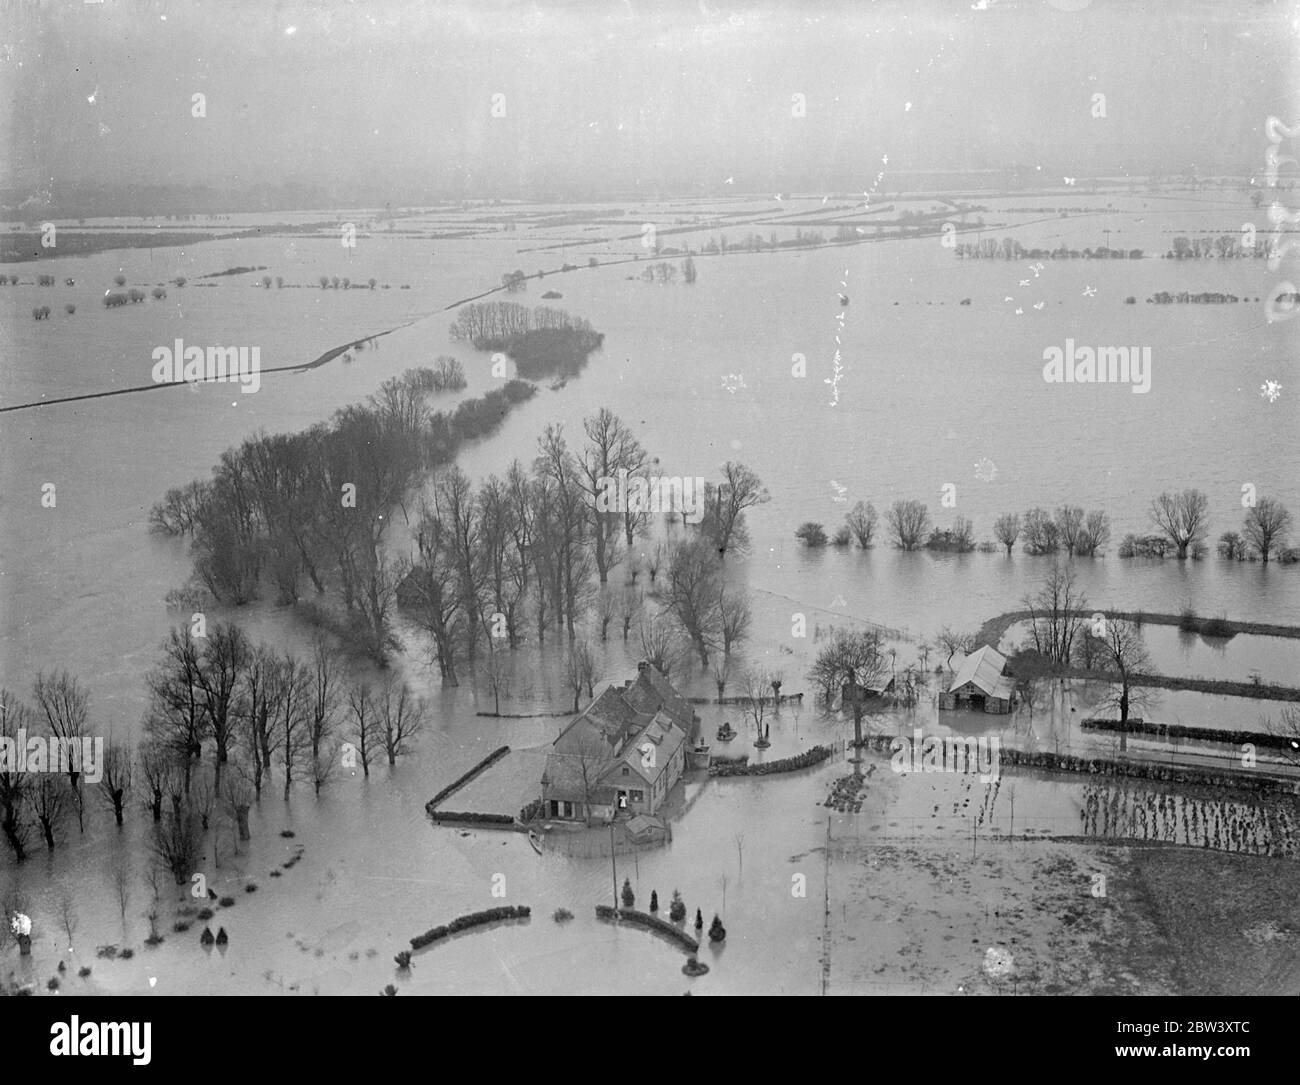 Bilder aus der Luft. Hunderte von Quadratmeilen durch Überschwemmungen von berstenden Flüssen in den Fens bedroht. Die schwerste Überschwemmungssituation seit Jahren ist die Fens , wo Tausende von Hektar Ackerland wurden von Flüssen überschwemmt, die ihre Ufer unter dem Druck von schweren Regenfällen und Frühjahrszeiten platzen . Zweihundertfünfzig Quadratmeilen Land sind von den Überschwemmungen bedroht. Foto zeigt, die überflutete Weite von Stanton Fen. 16 März 1937 Stockfoto